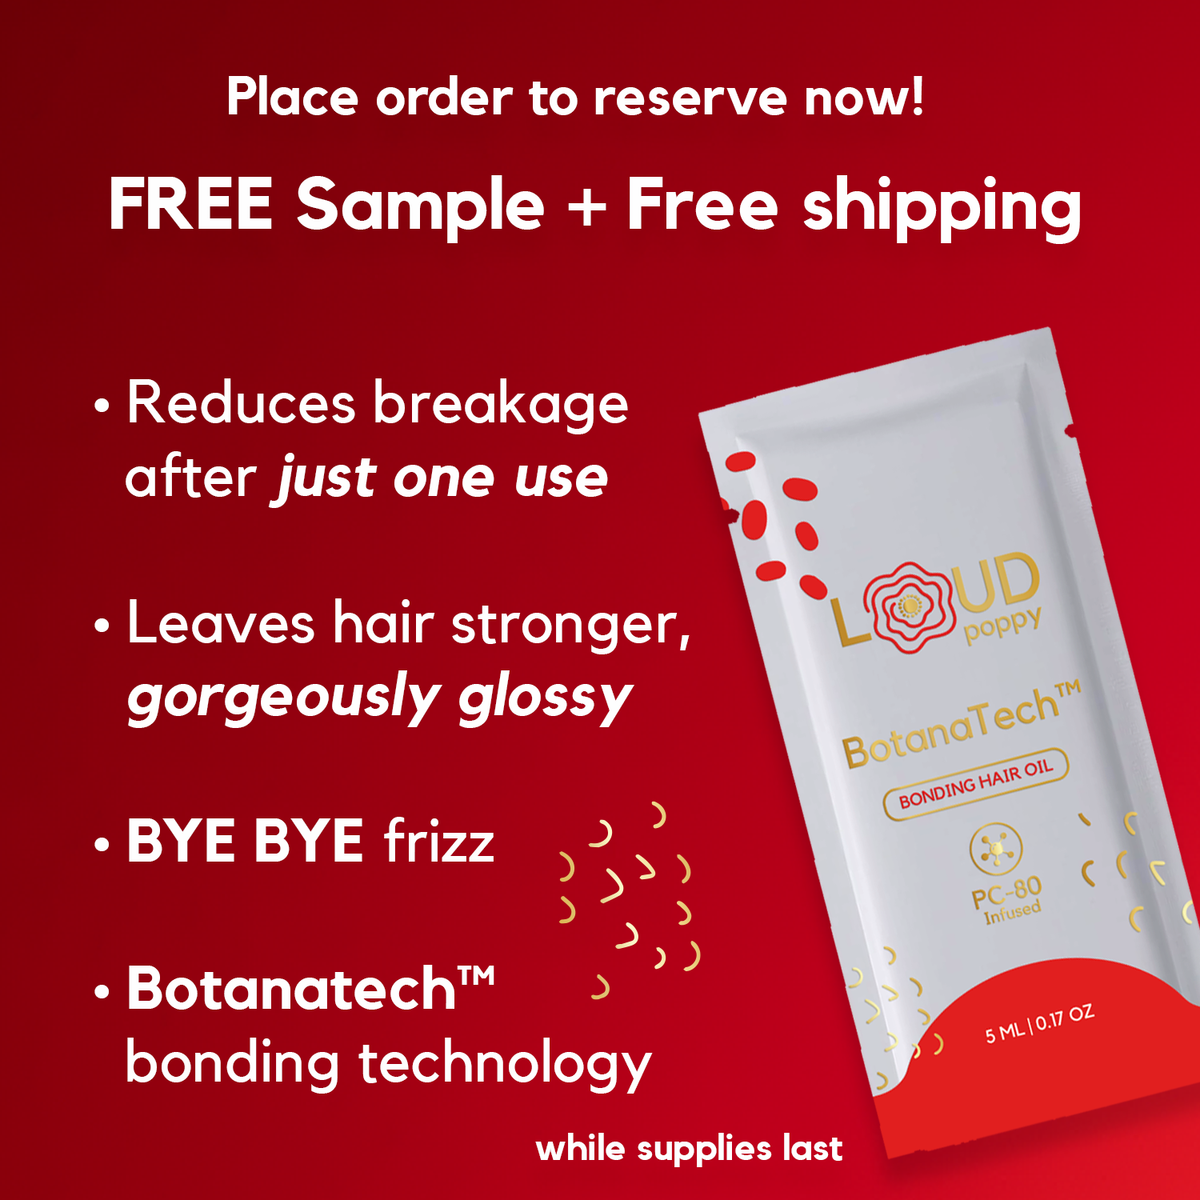 Free Sample of Loud Poppy BotanaTech Bonding Hair Oil